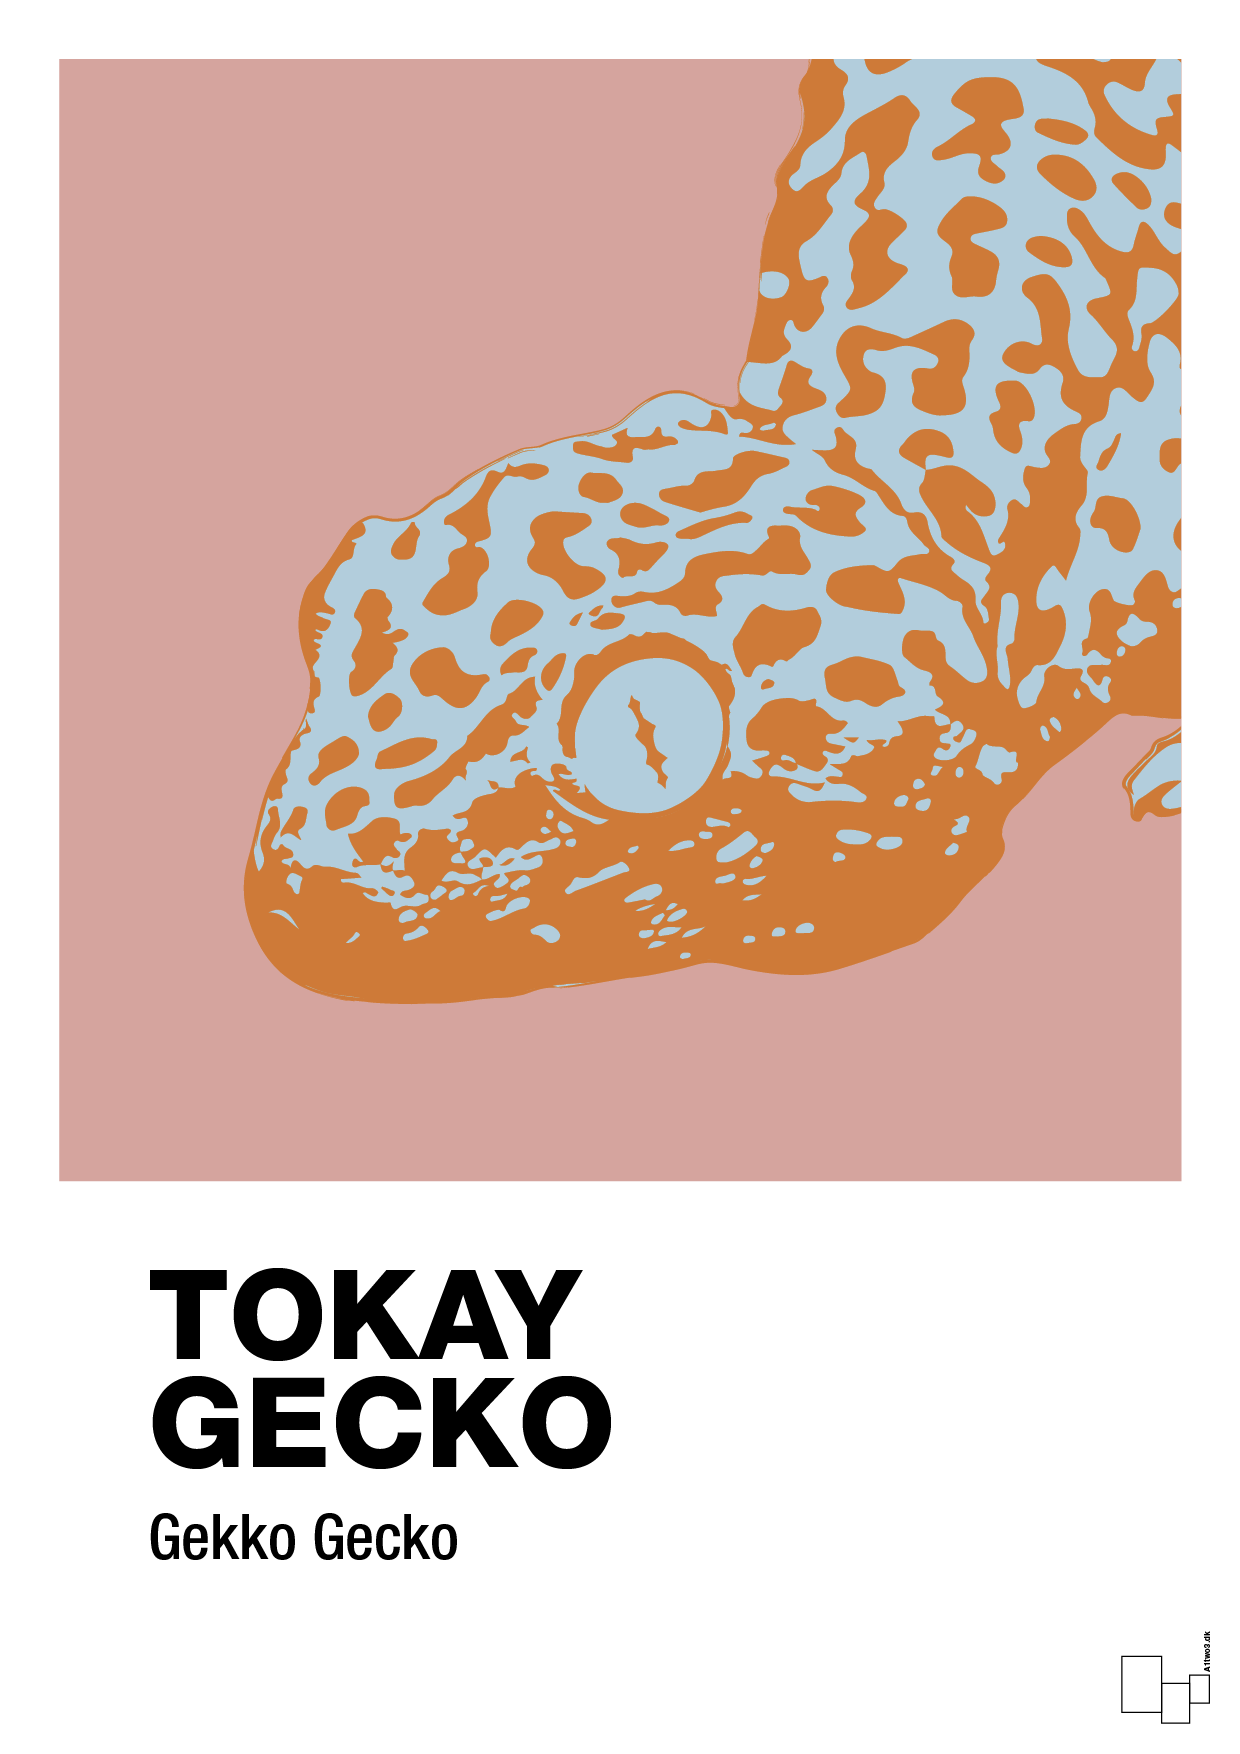 tokay gecko - Plakat med Videnskab i Bubble Shell